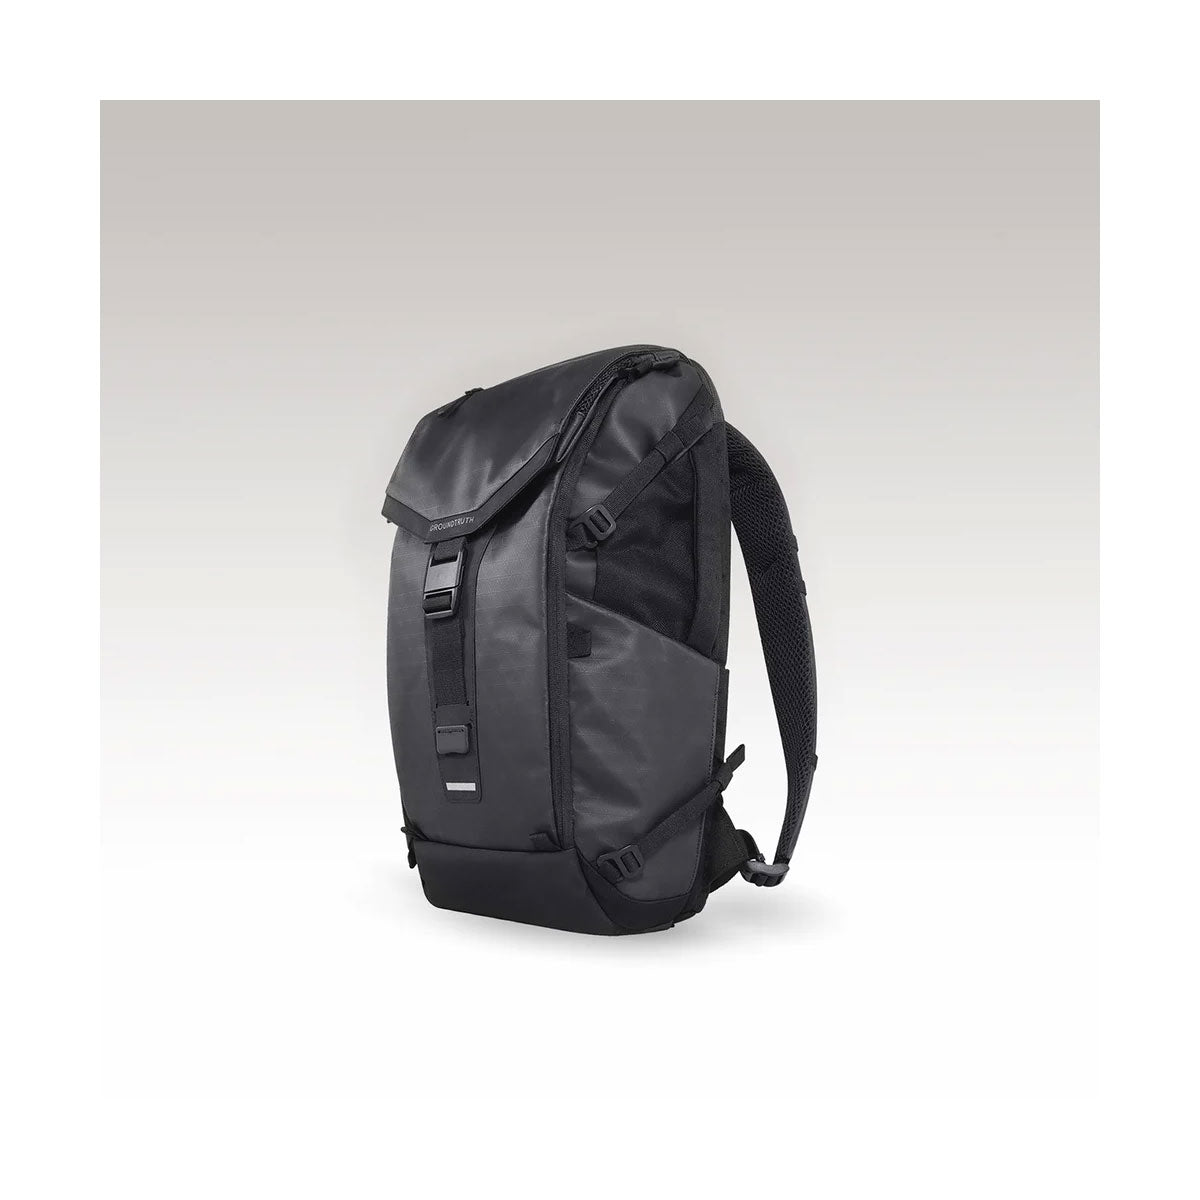 Groundtruth : RIKR 23L Ultimate Backpack : Black